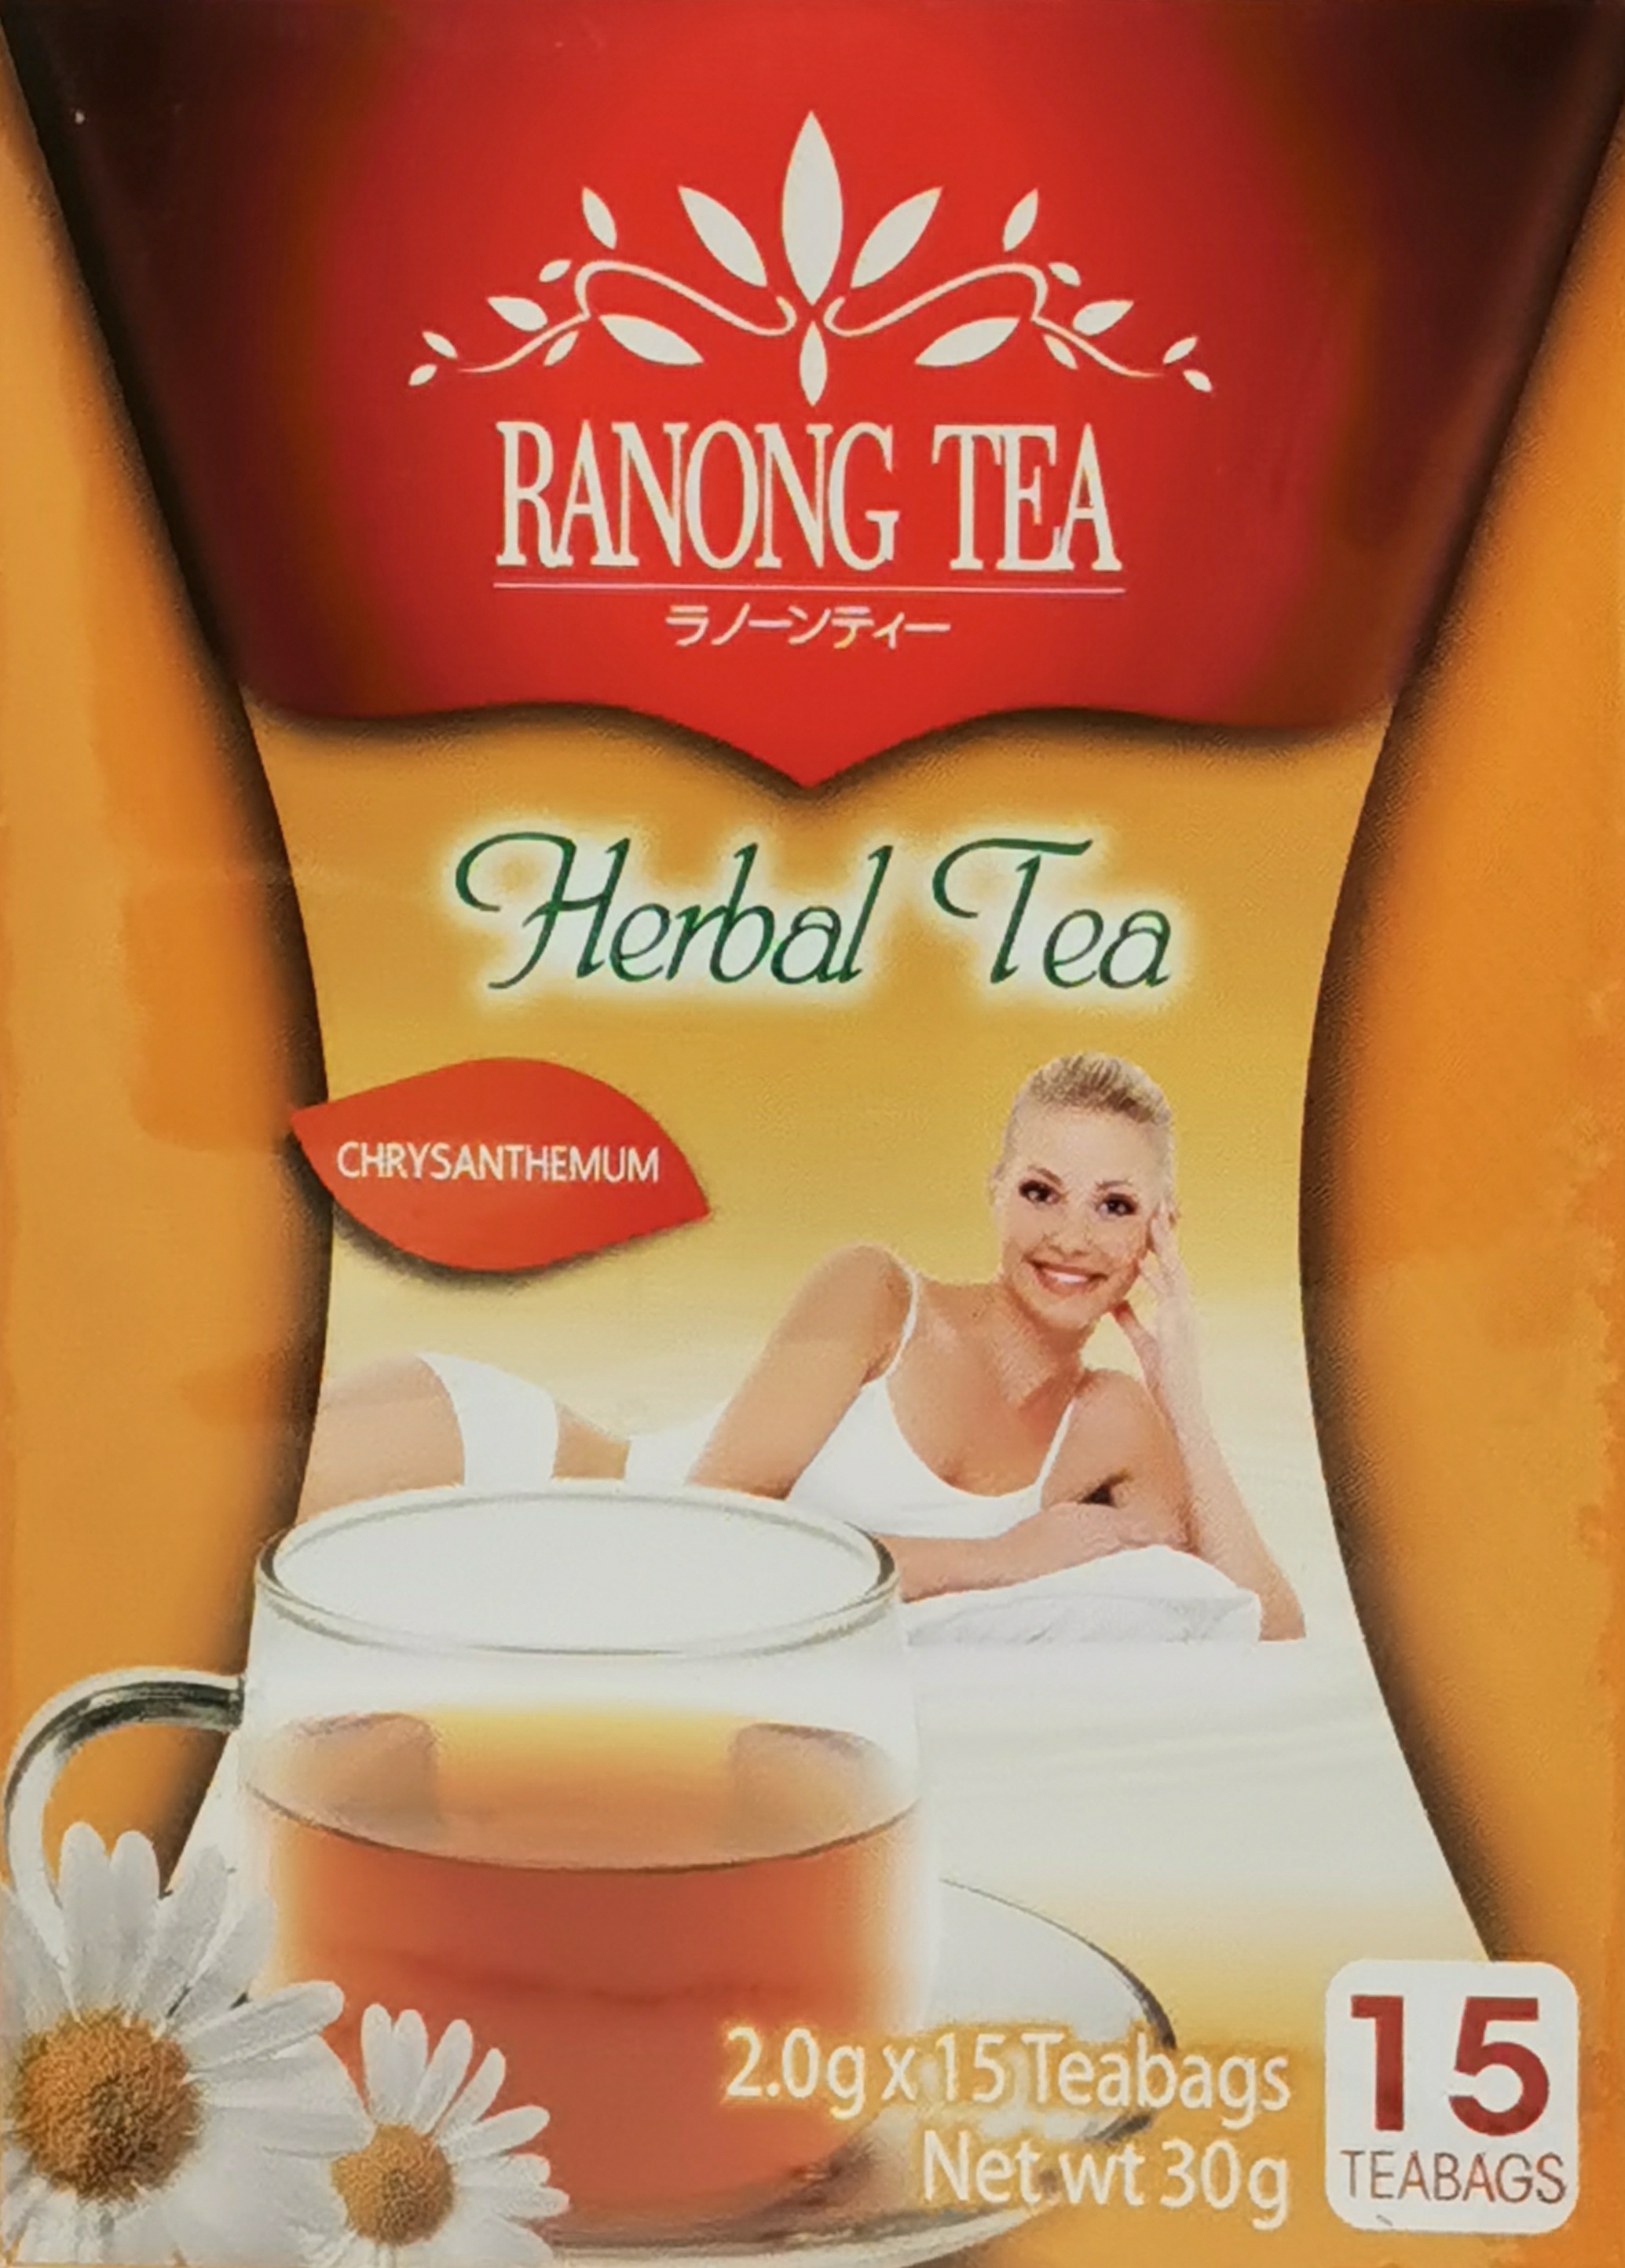 Ranong tea red tab herbal tea drink chrysanthemum tea 30g(15x2g)